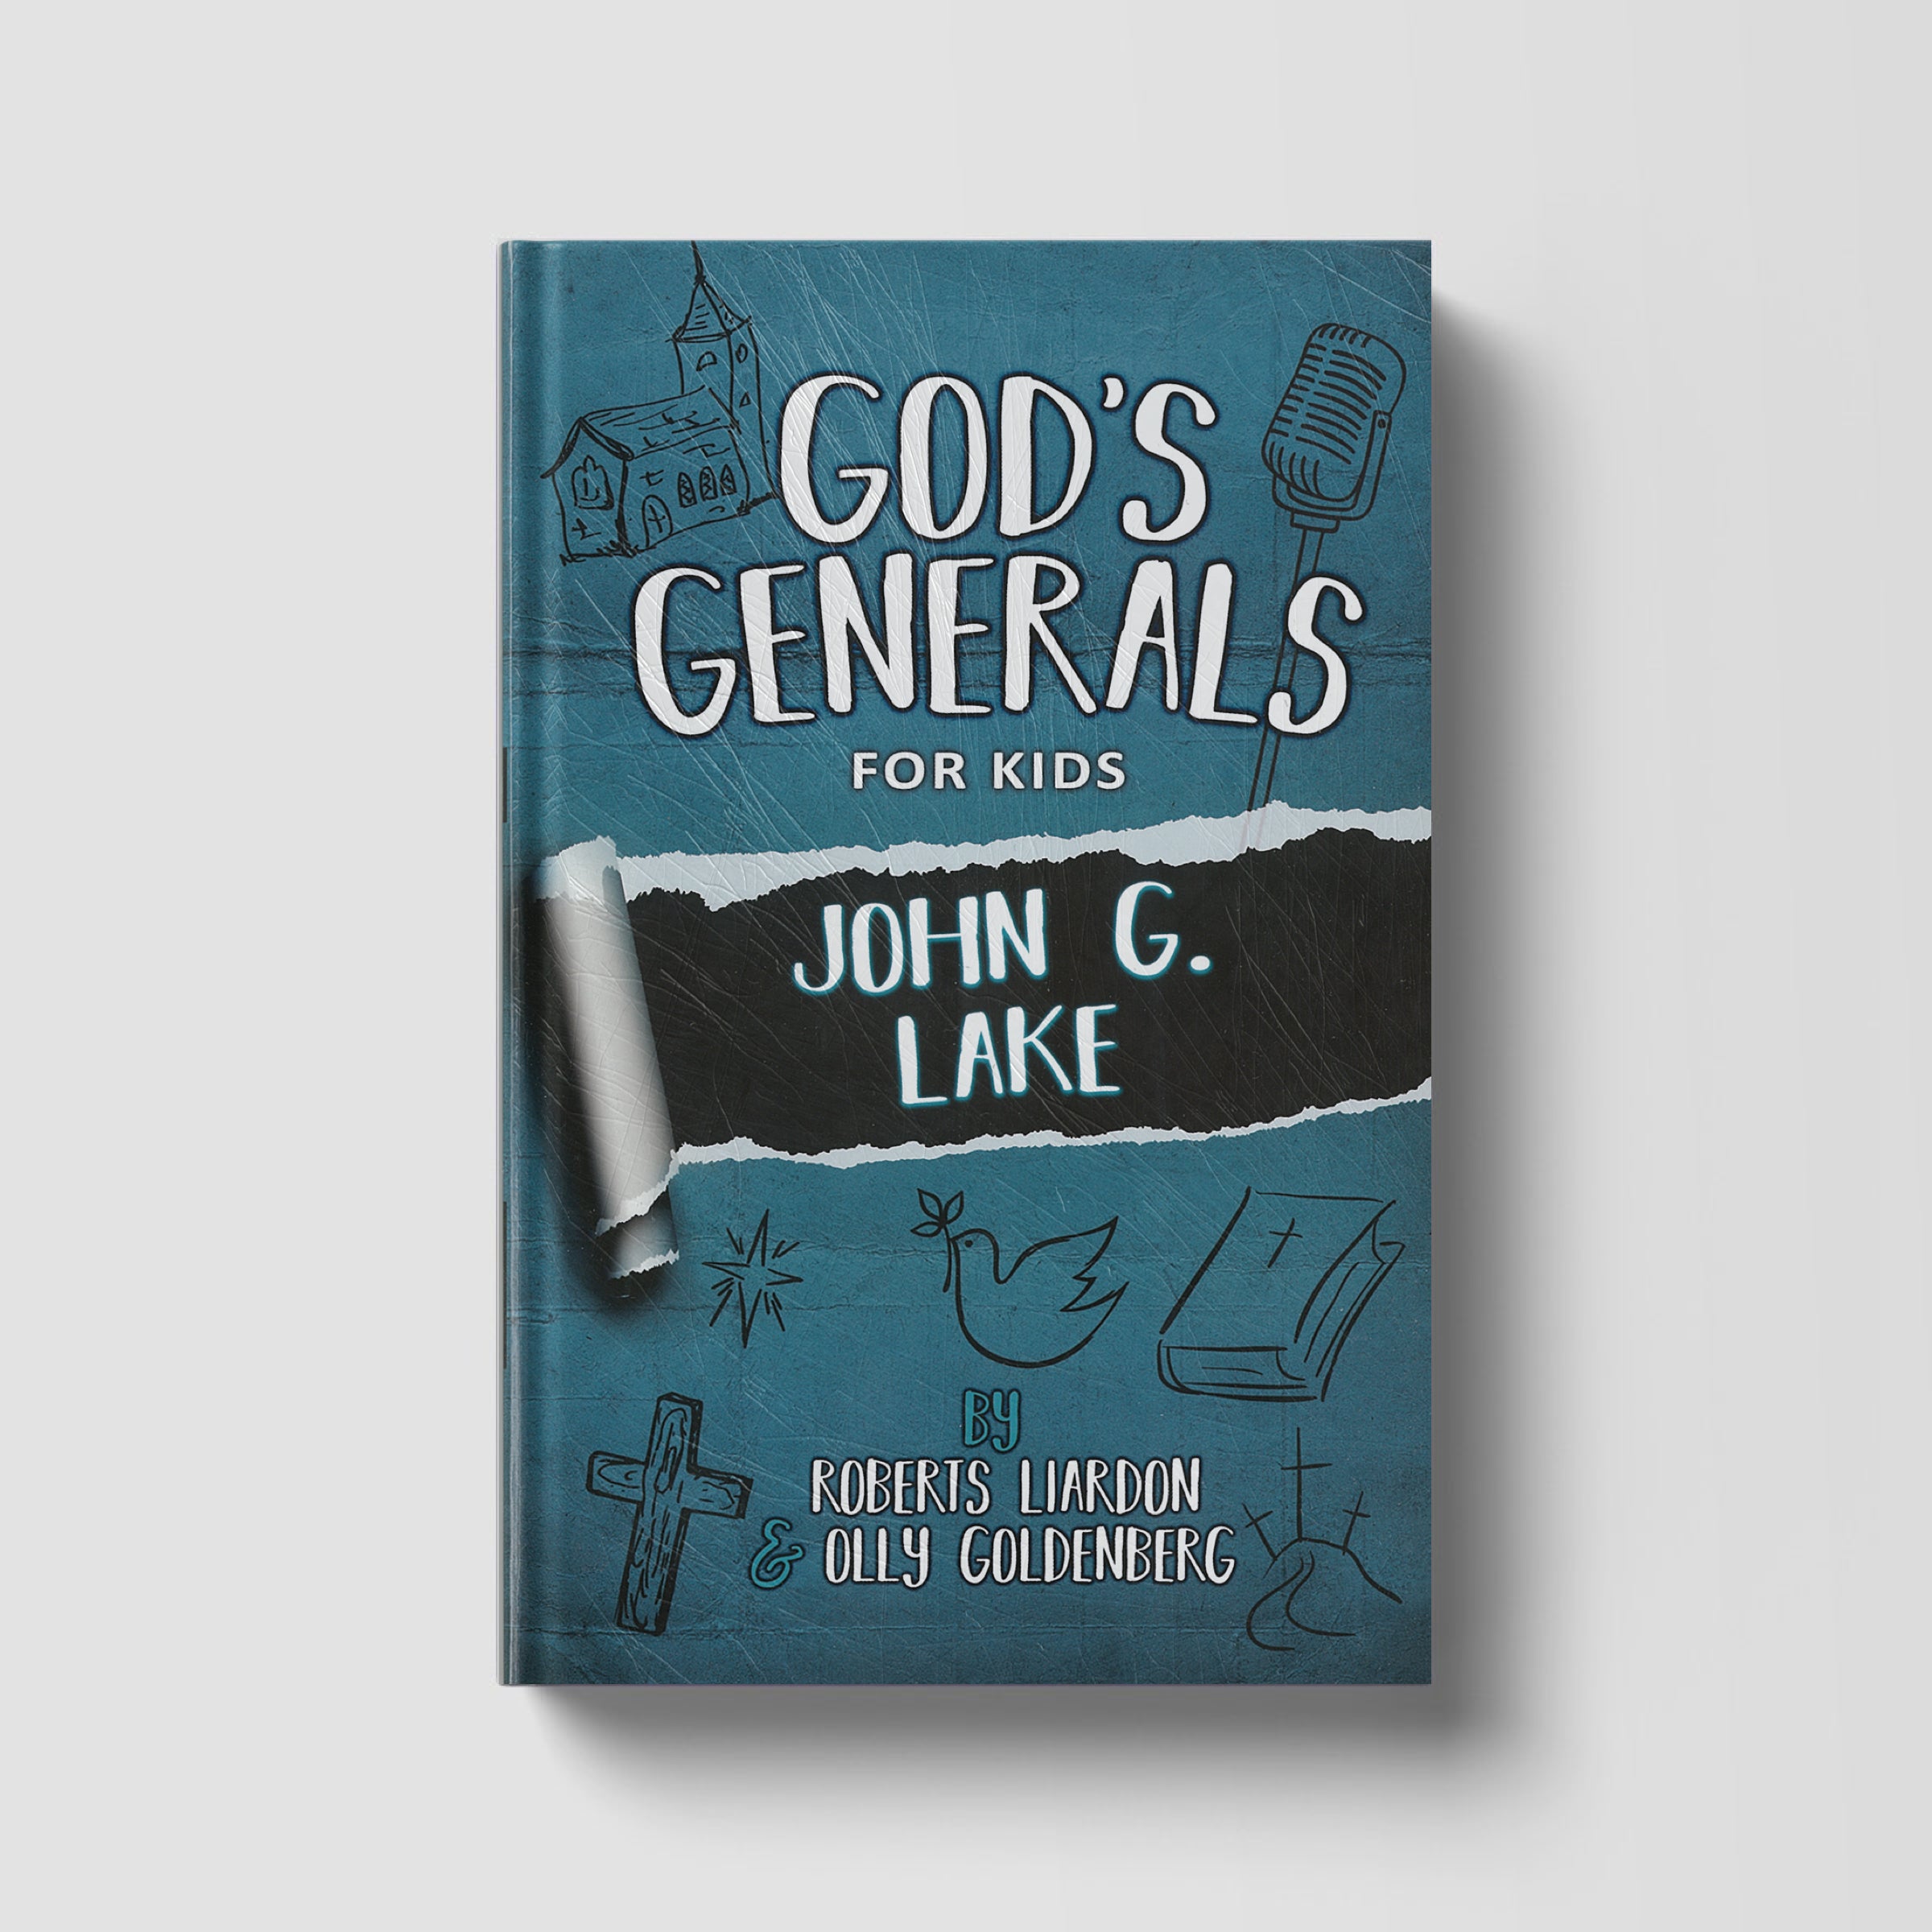 God's Generals For Kids: John G. Lake Volume 8